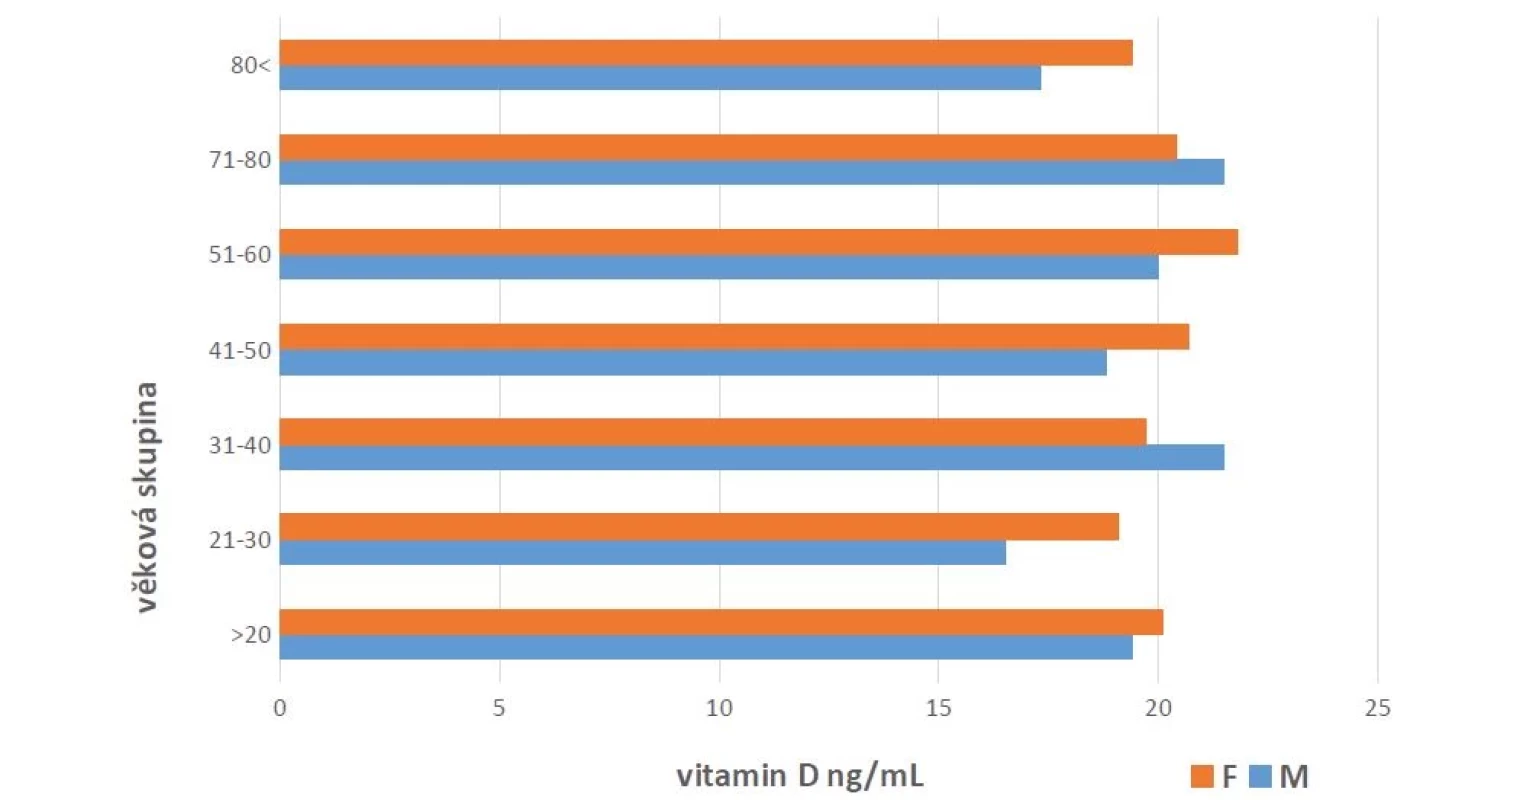 Rozložení průměrných hodnot vitaminu D v závislosti na pohlaví (muži – M, ženy – F) v jednotlivých věkových kategoriích